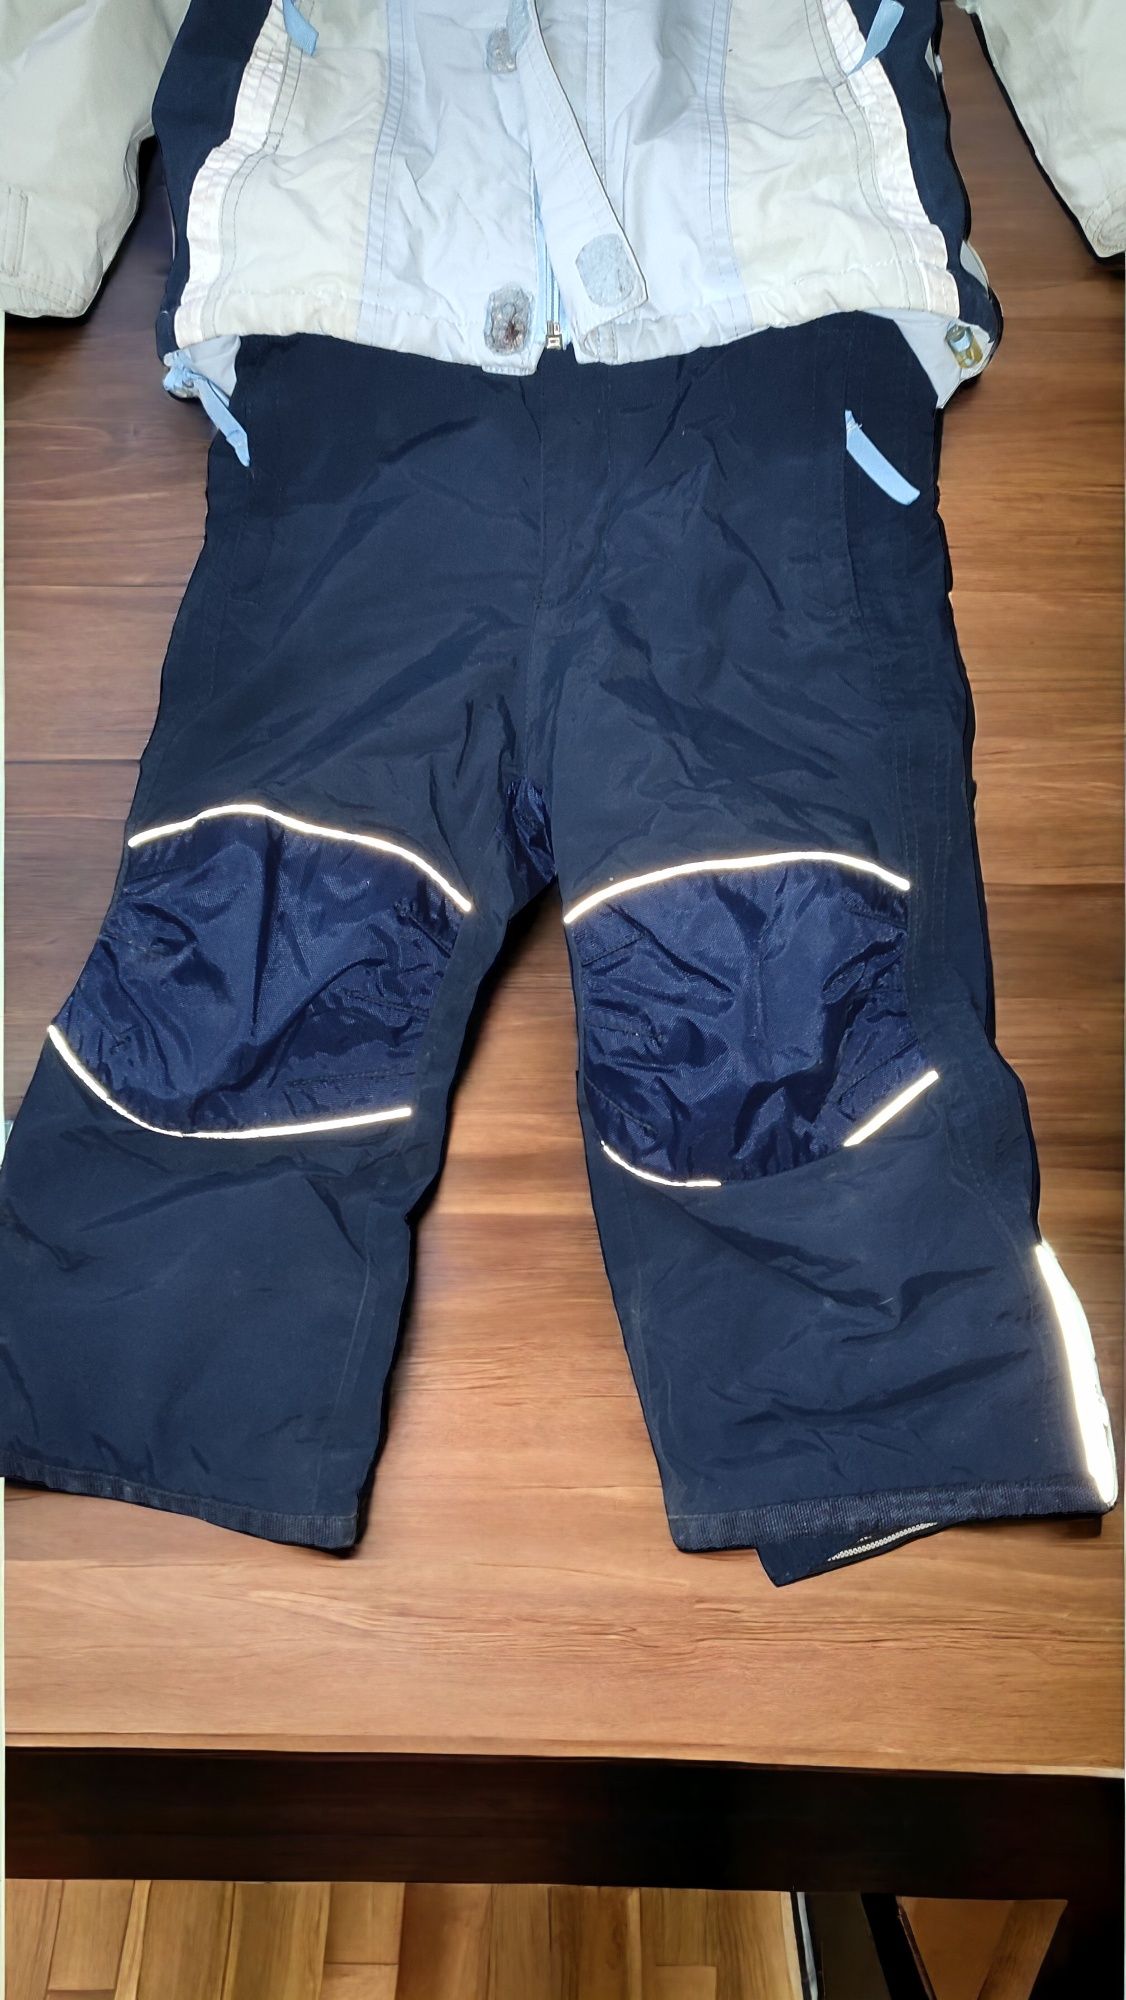 Kurtka+ spodnie narciarskie dla chłopca rozmiar 98-104